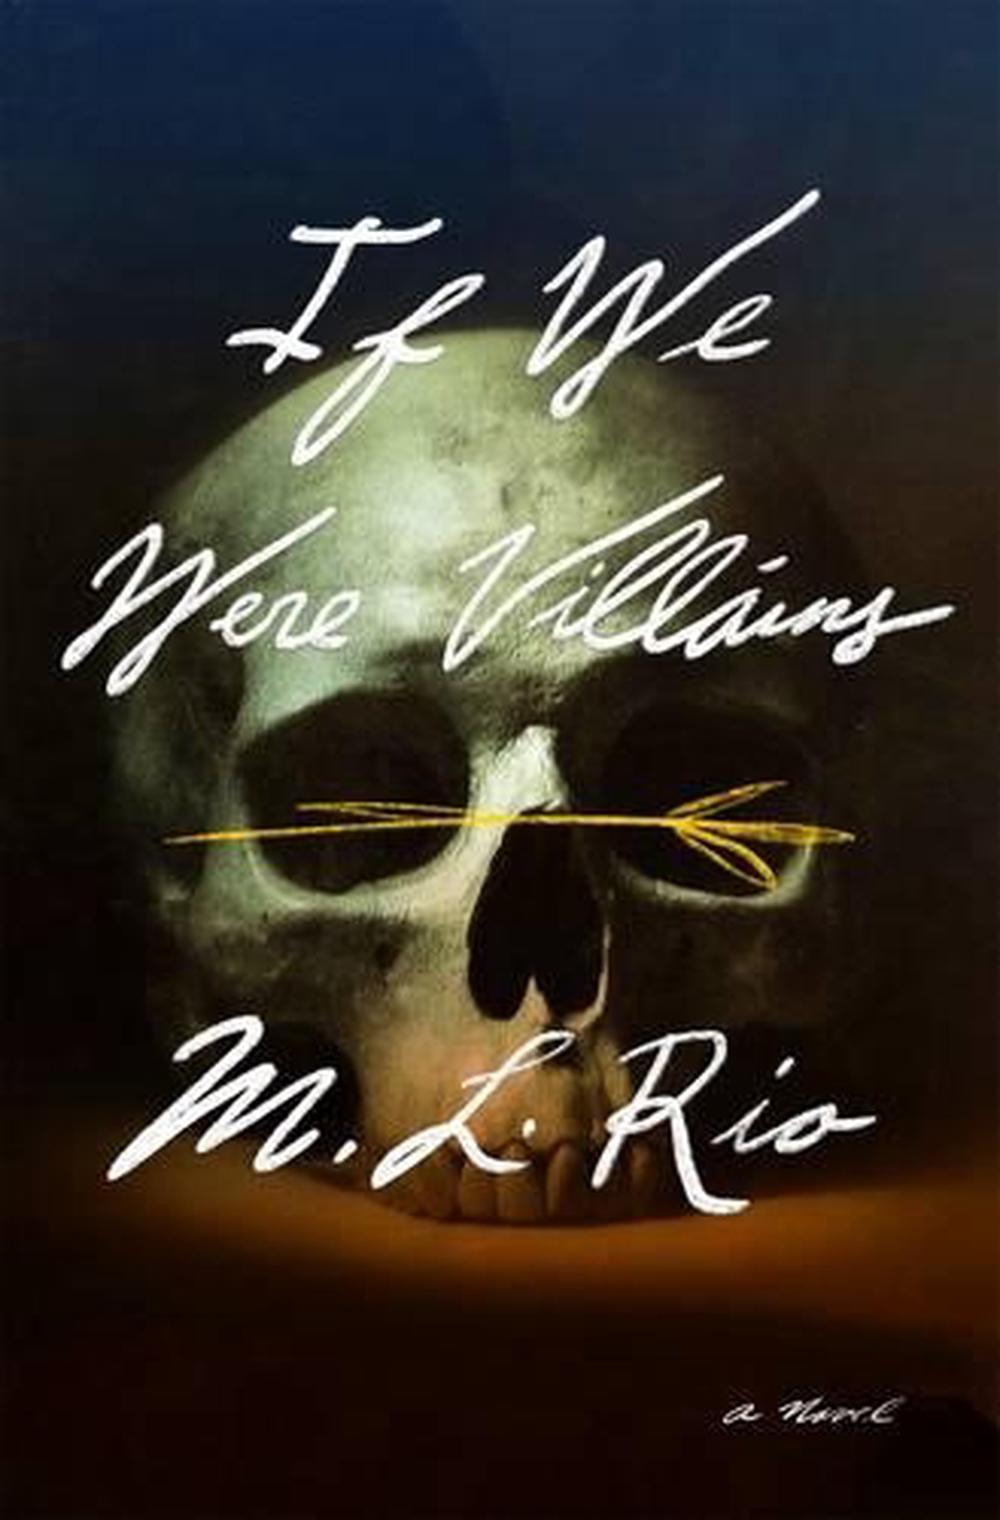 If We Were Villains – M. L. Rio